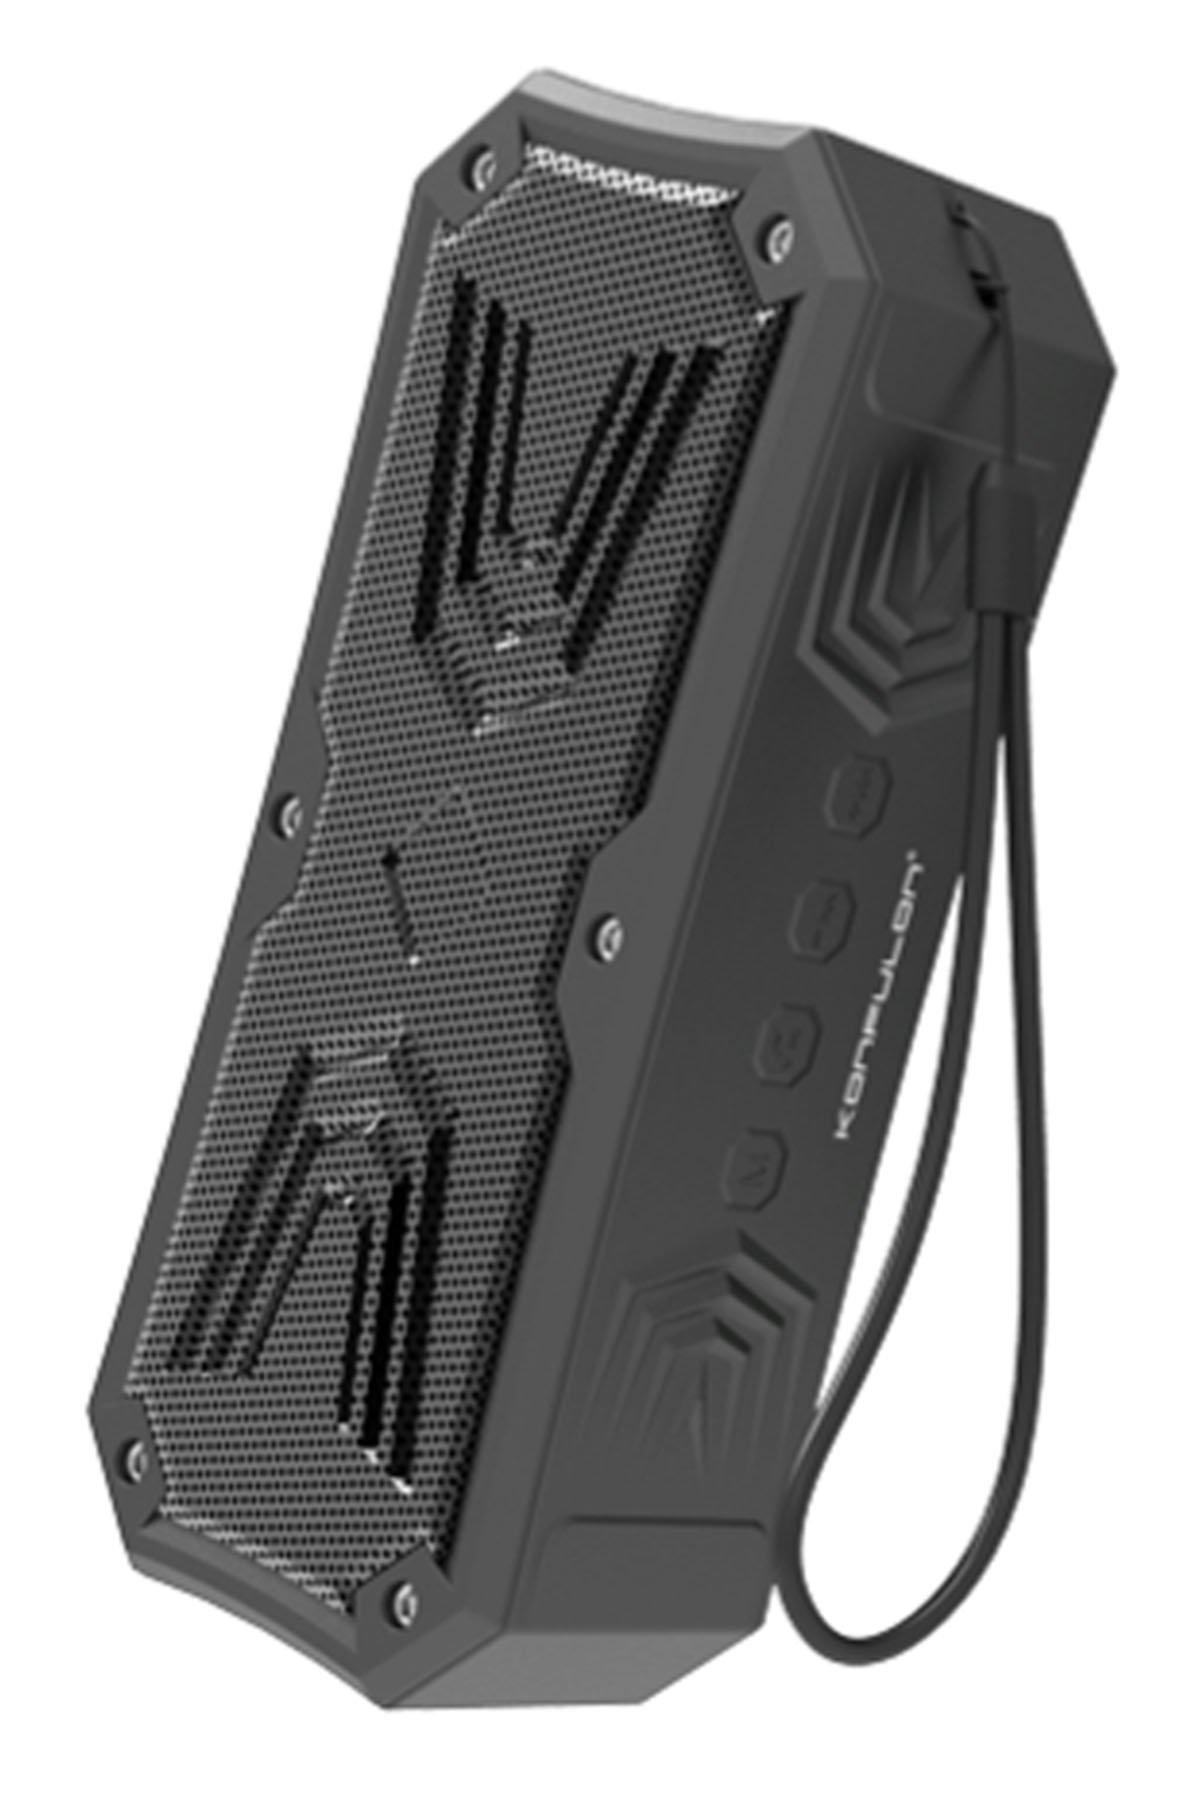 Konfulon S82 Seramik Uçlu Micro USB Kablo 1M 3.1A - Siyah